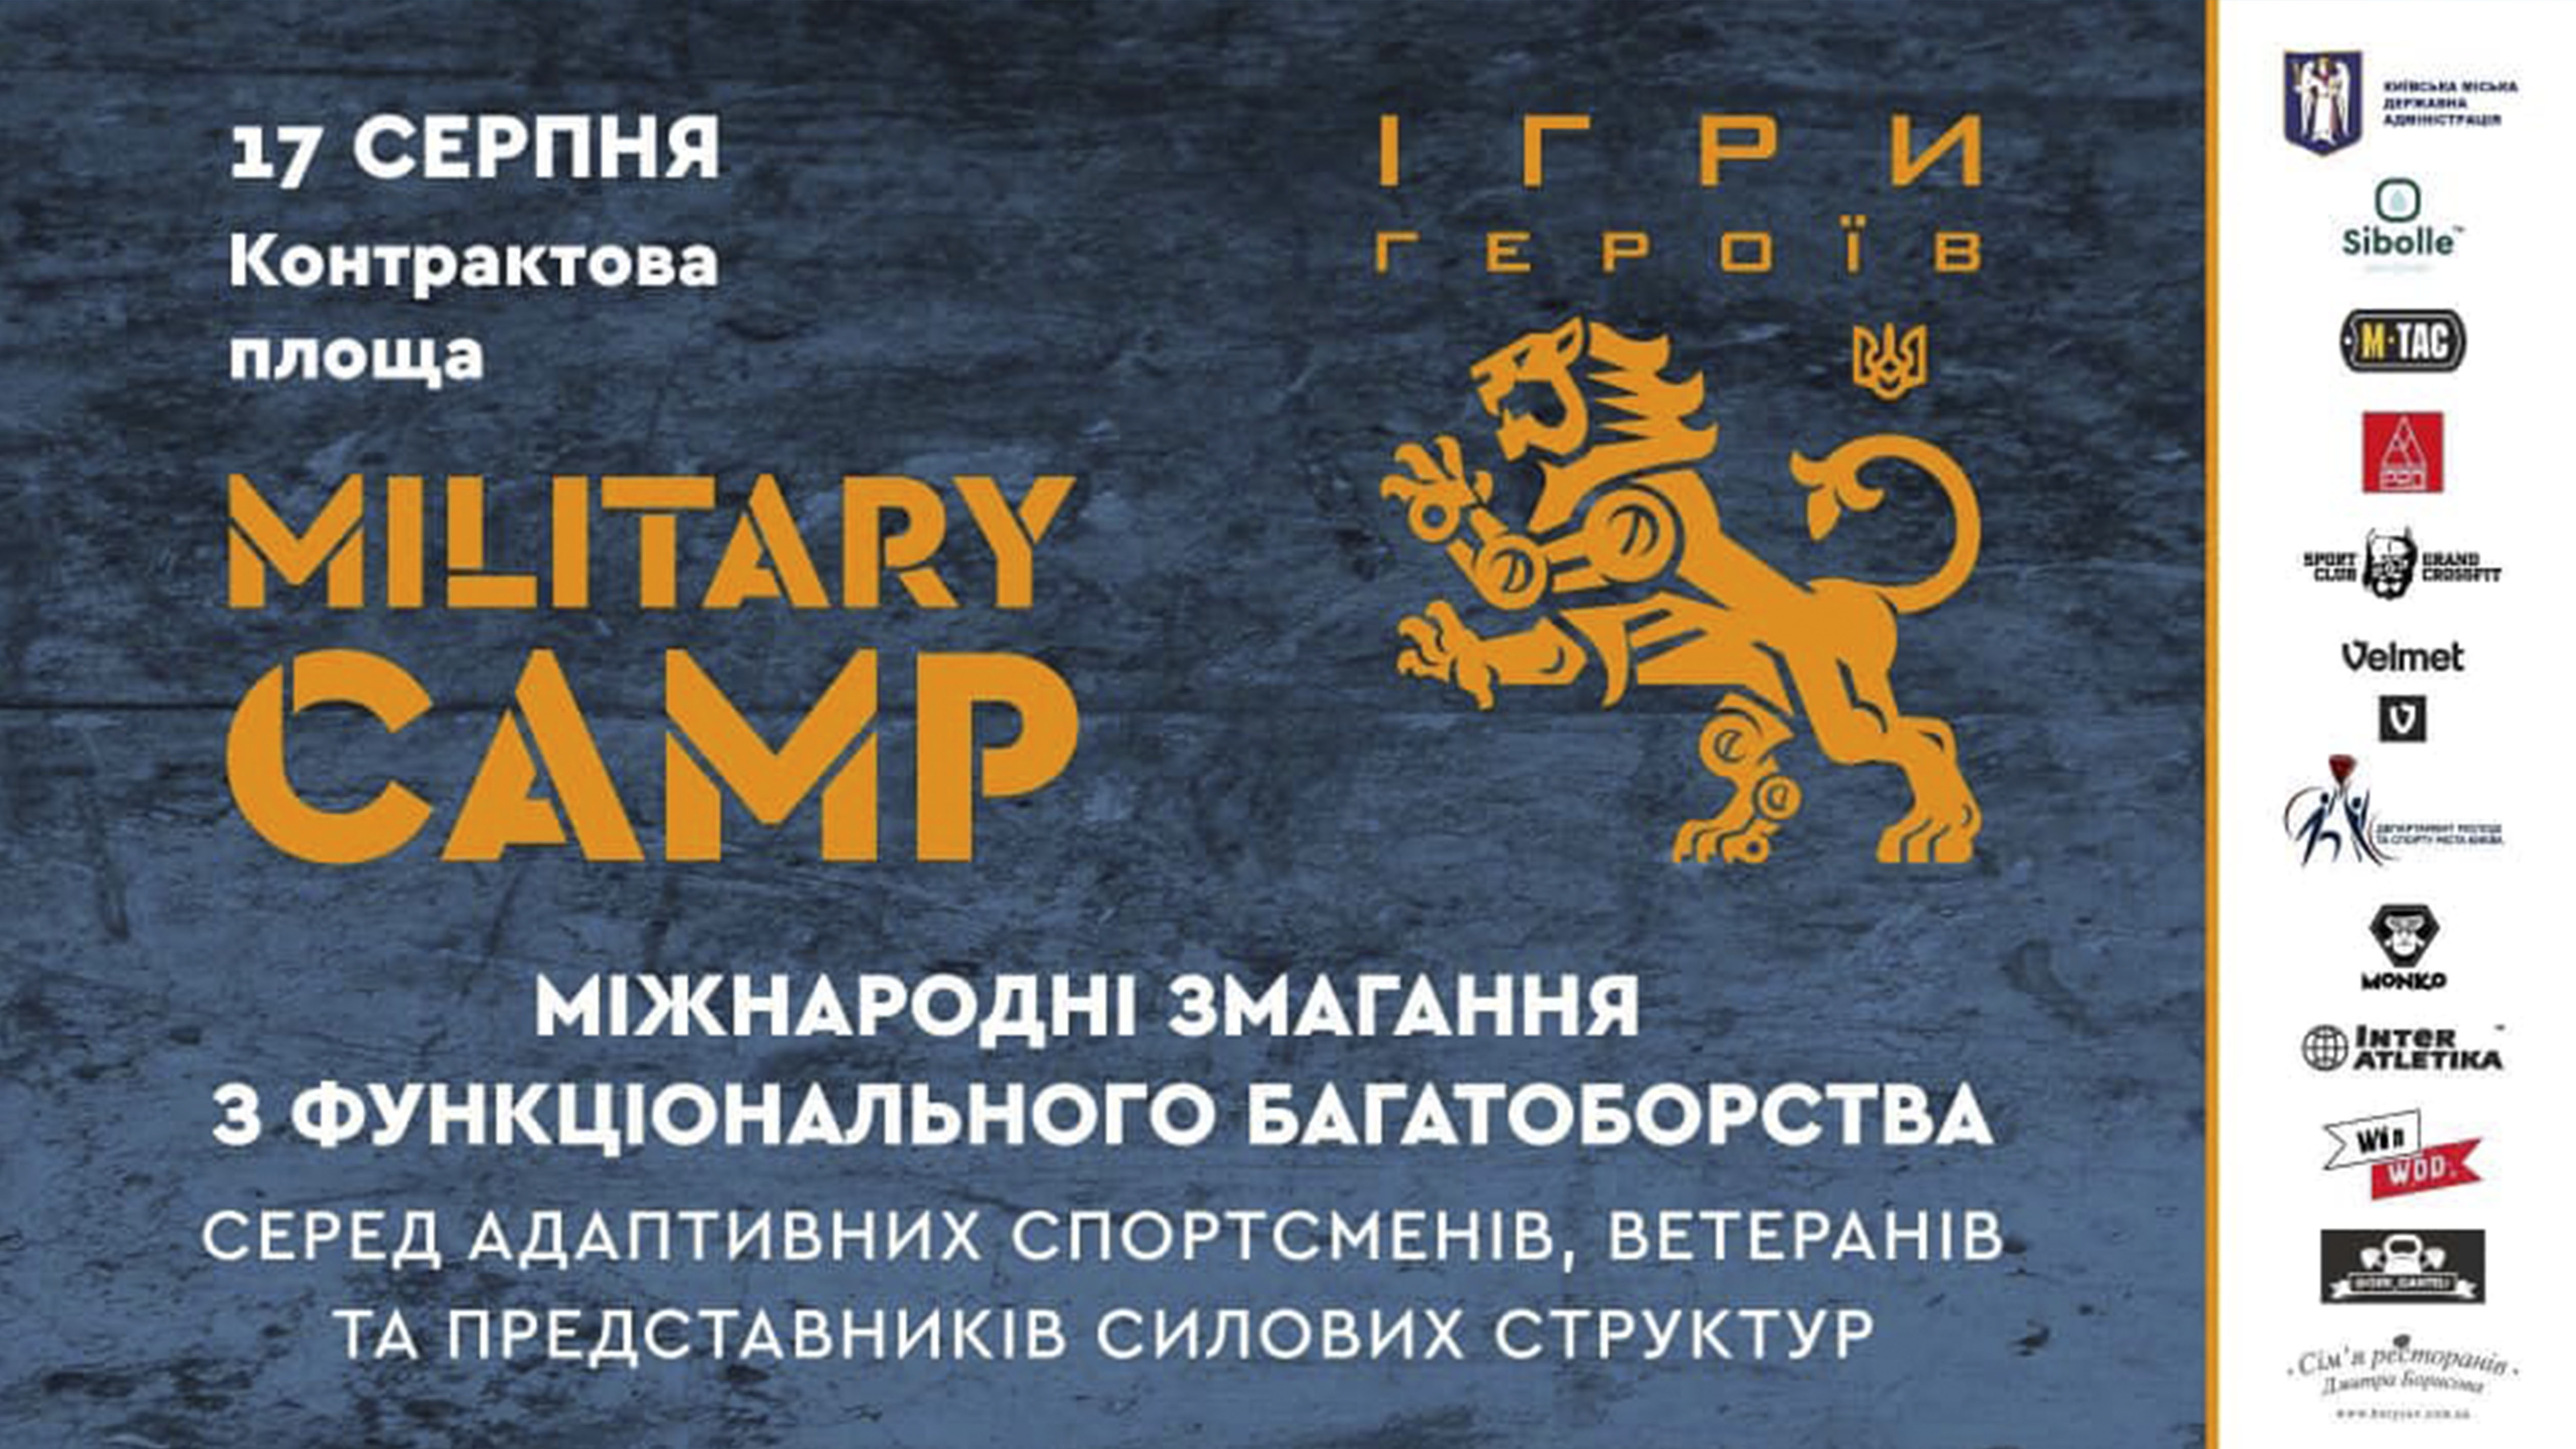 Գ  " "  Military Camp